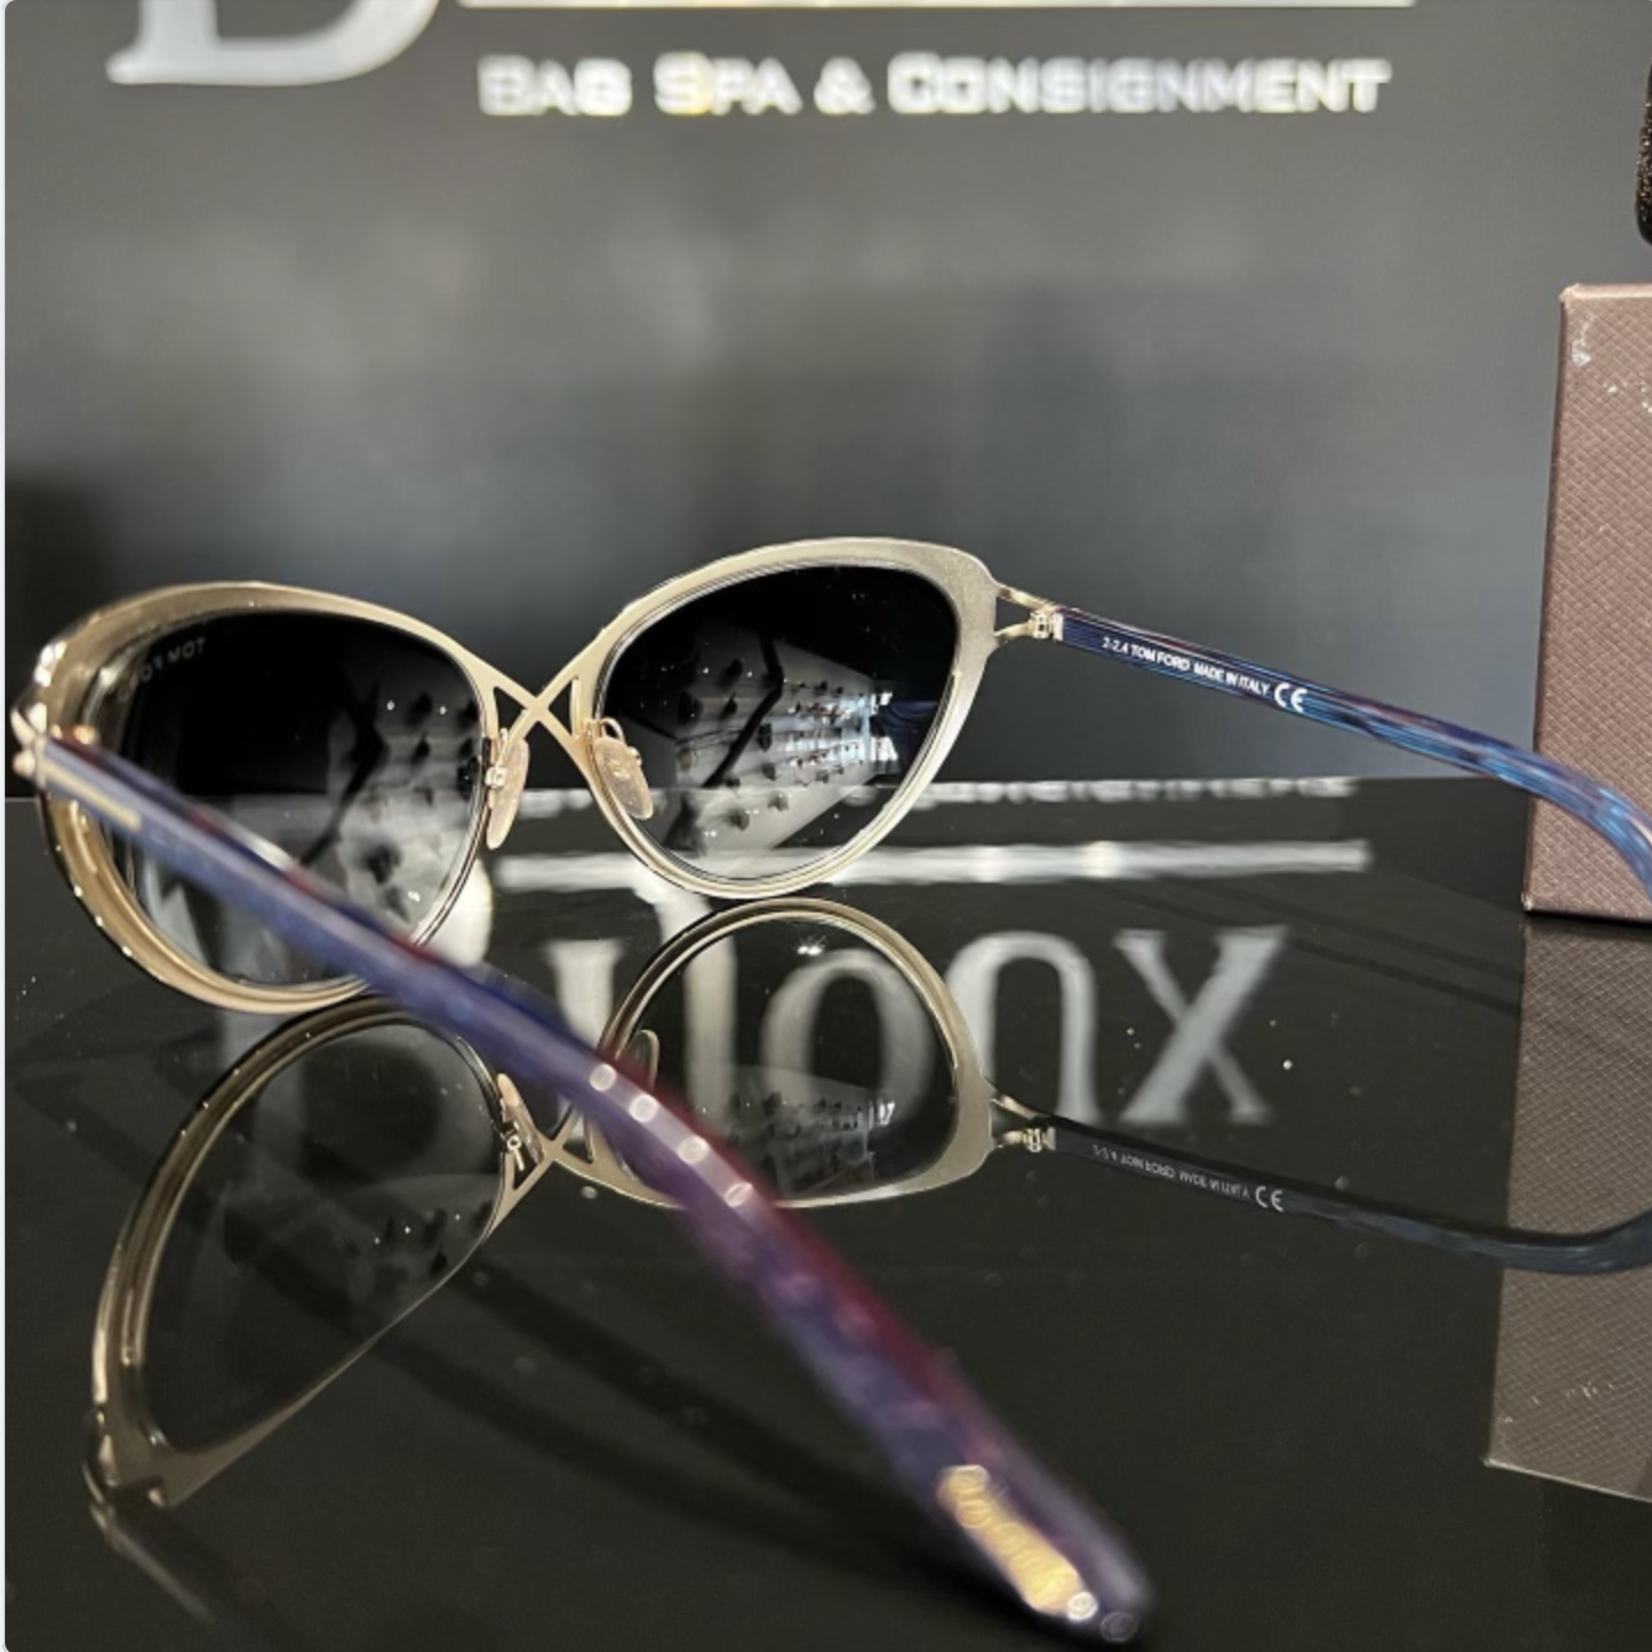 Tom Ford Daria Womens Sunglasses - Bijoux Bag Spa & Consignment